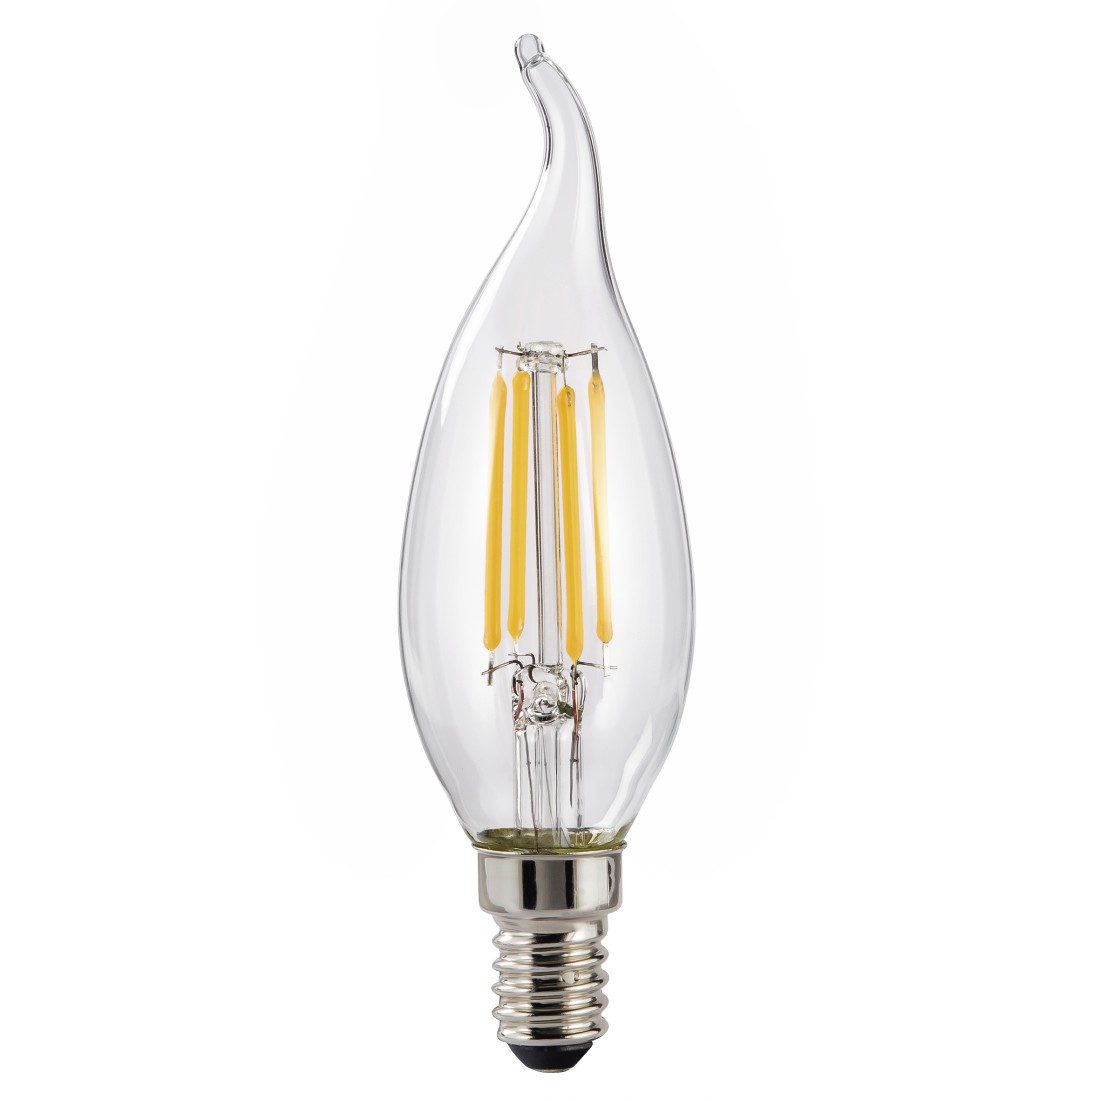 abx High-Res Image - Xavax, Ampoule filament LED, E14, 470lm rempl. ampoule bougie 40W, blc chaud